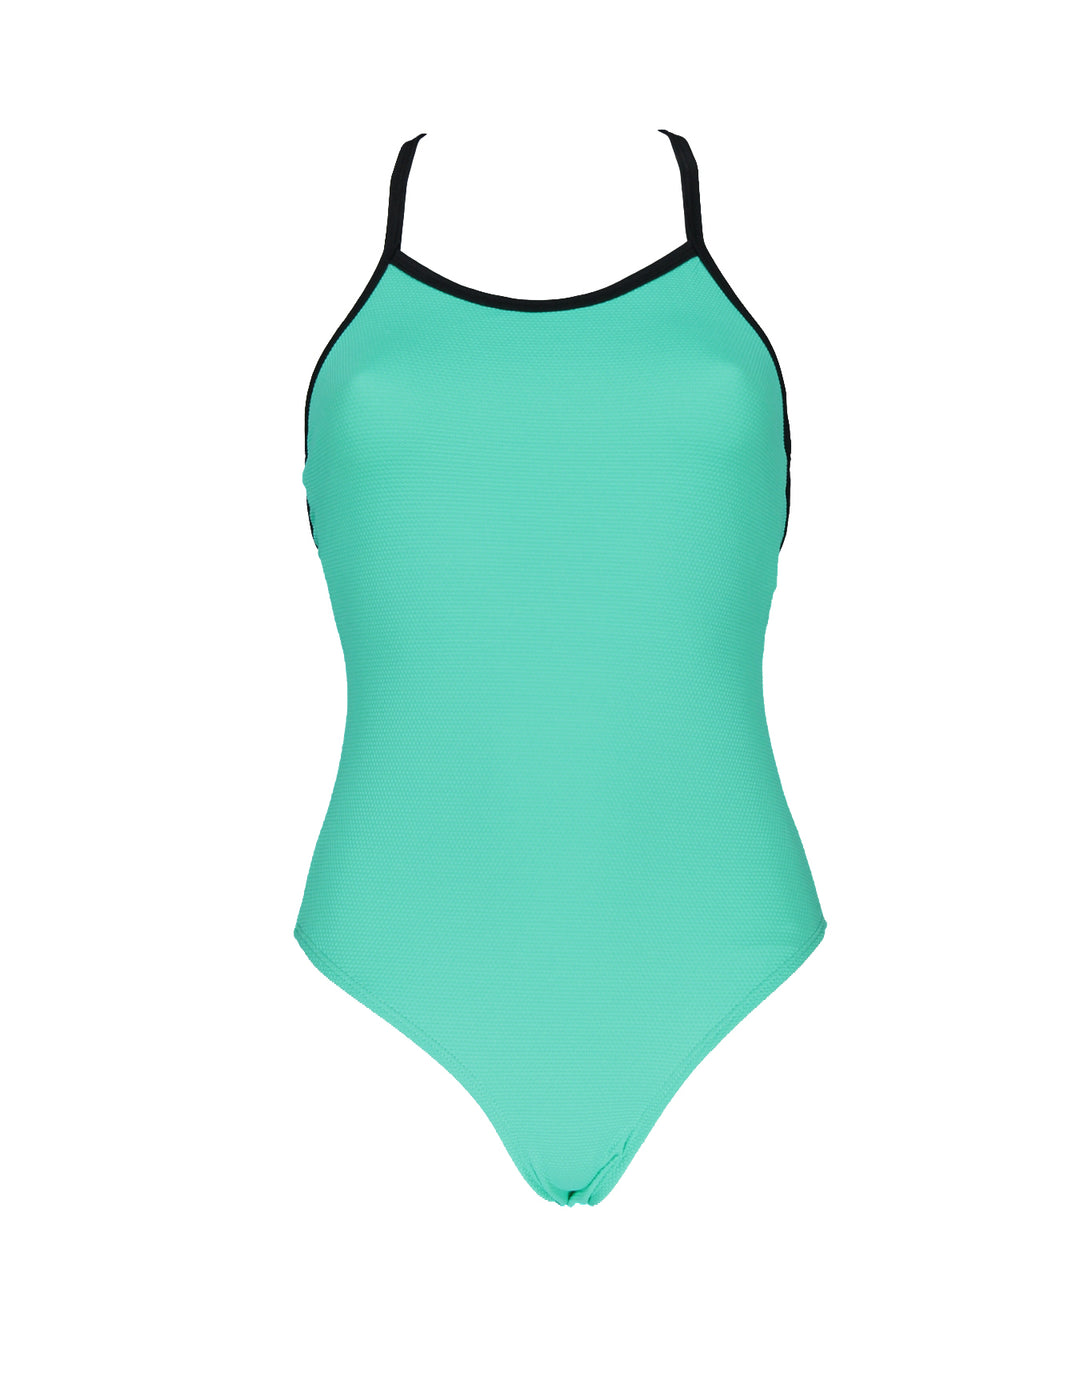 Women Swimsuit Textured Teal - سباح